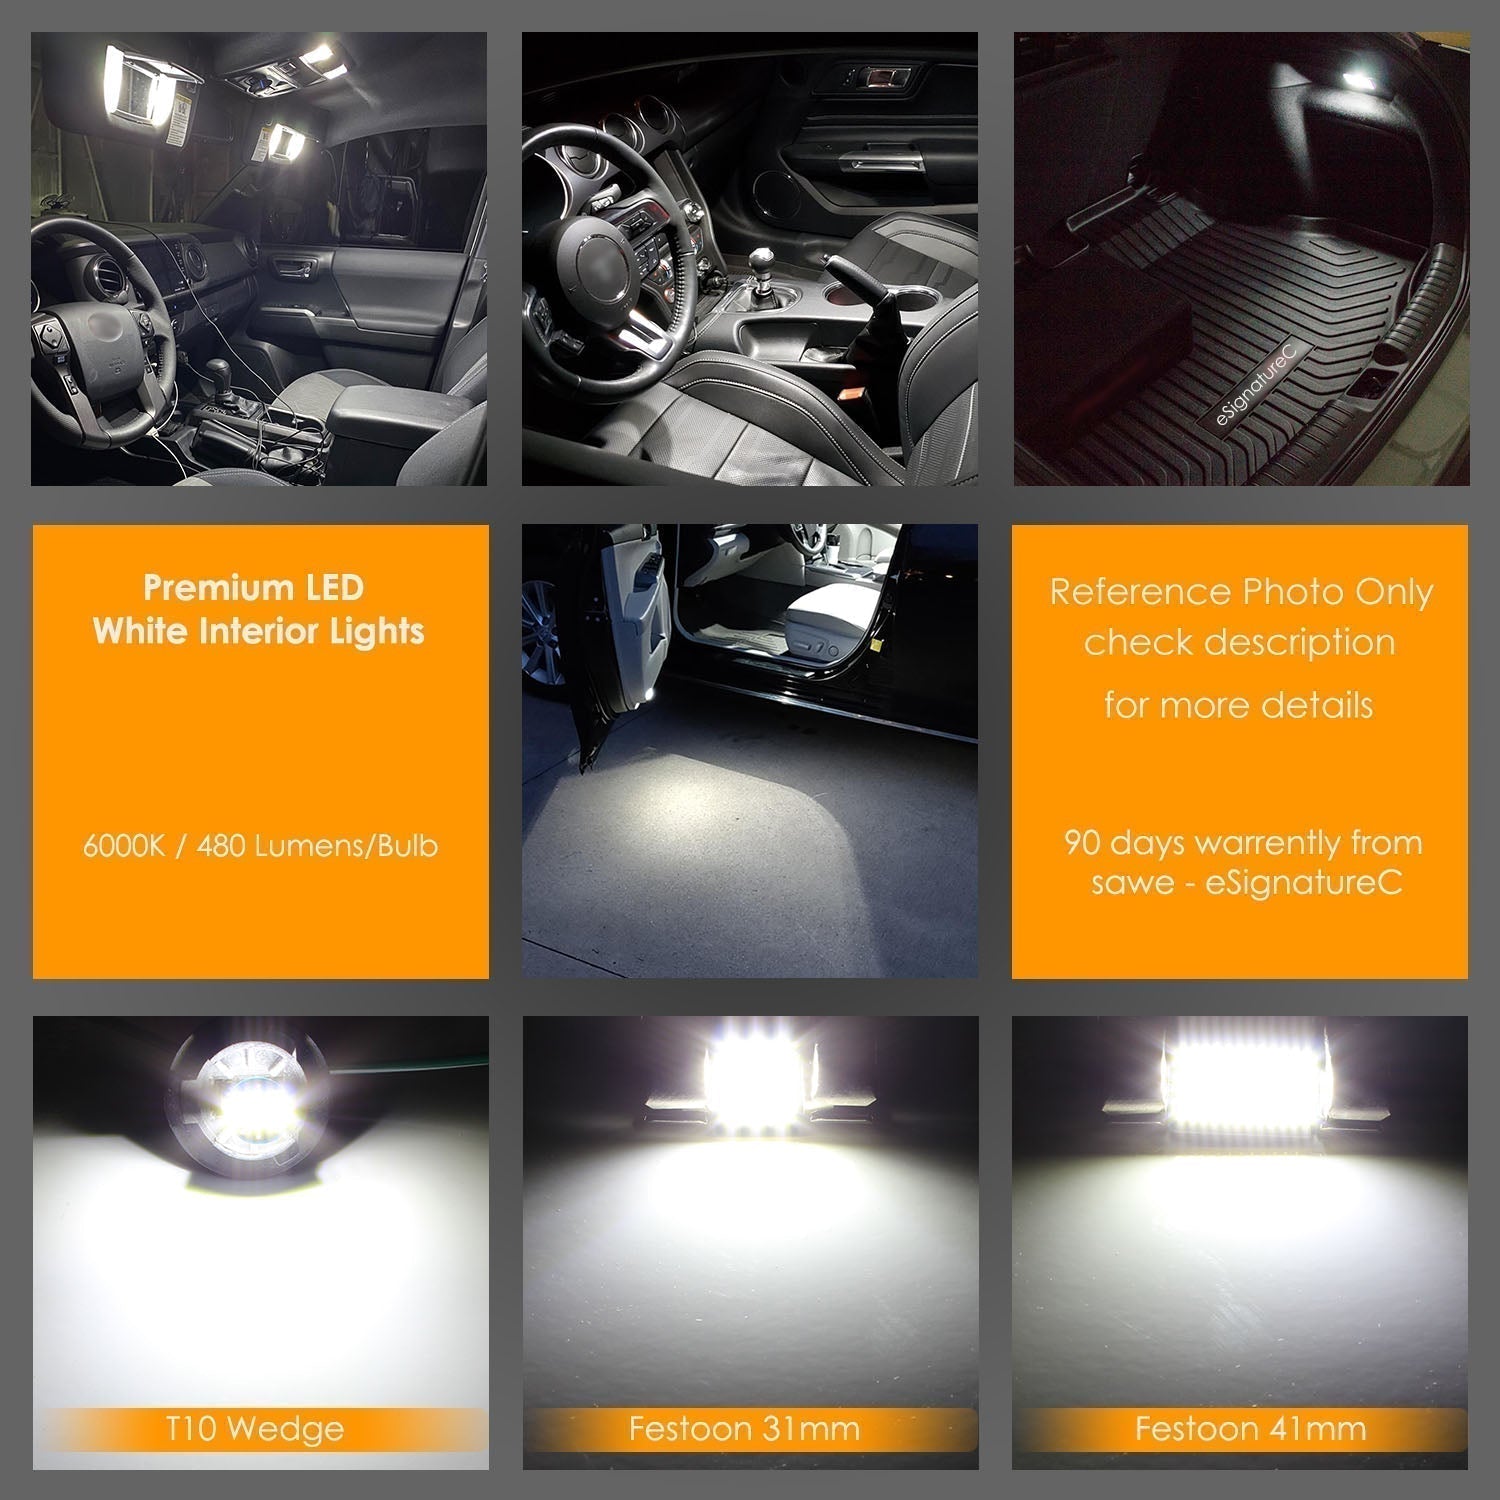 For Subaru XV Crosstrek Interior LED Lights - Dome & Map Light Bulbs Package Kit for 2013 - 2021 - White